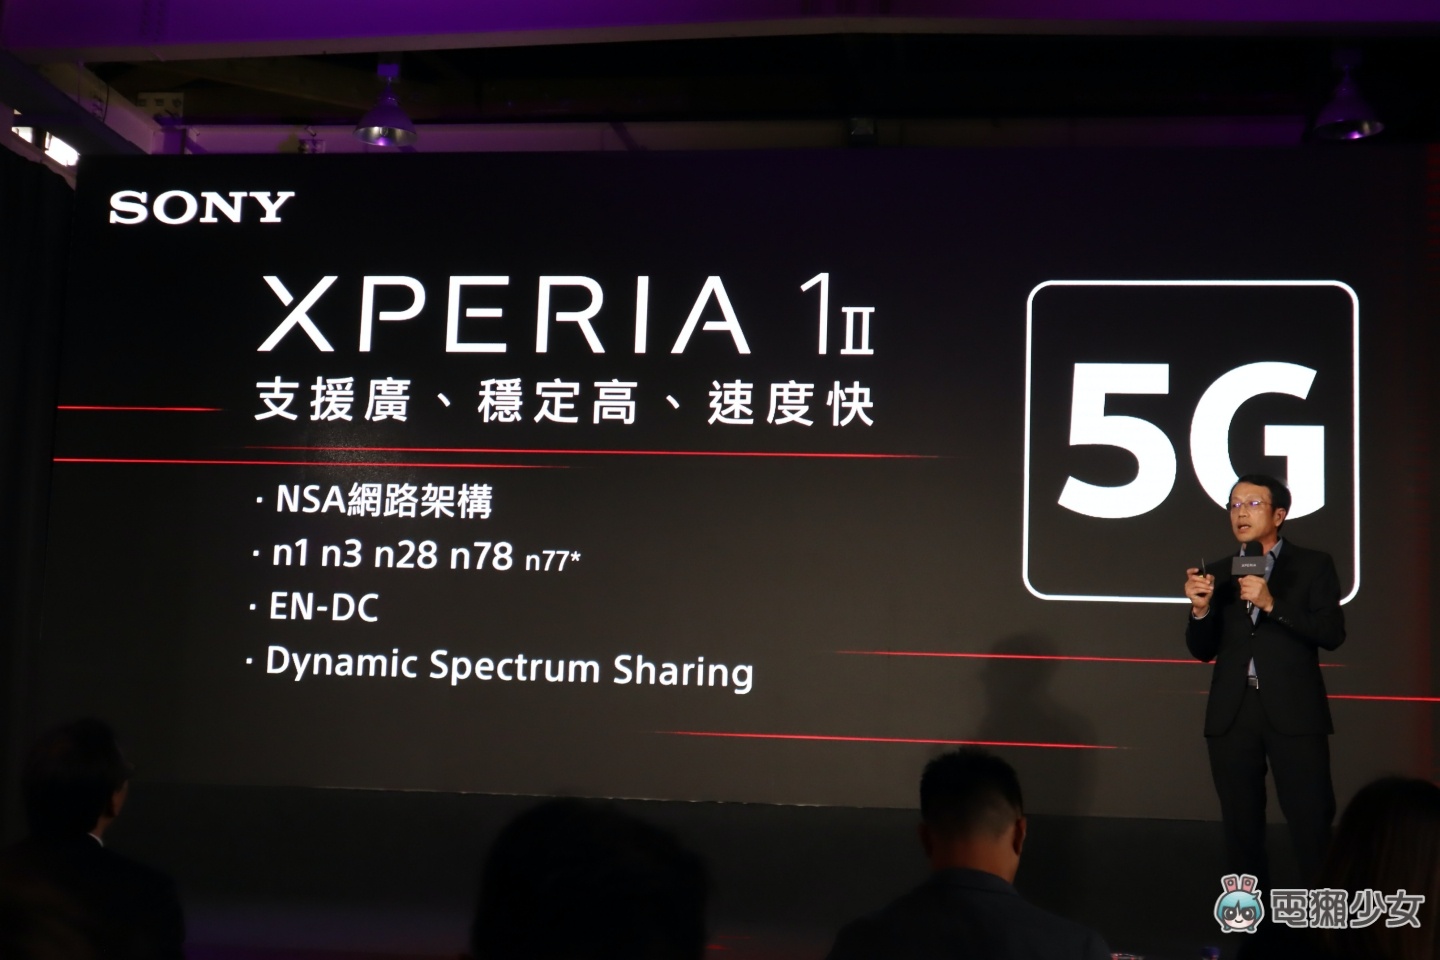 出門｜Sony 首款 5G 旗艦手機『 Xperia 1 II 』在台上市 滿足你影音娛樂的全方位需求 售價 35,990 台幣